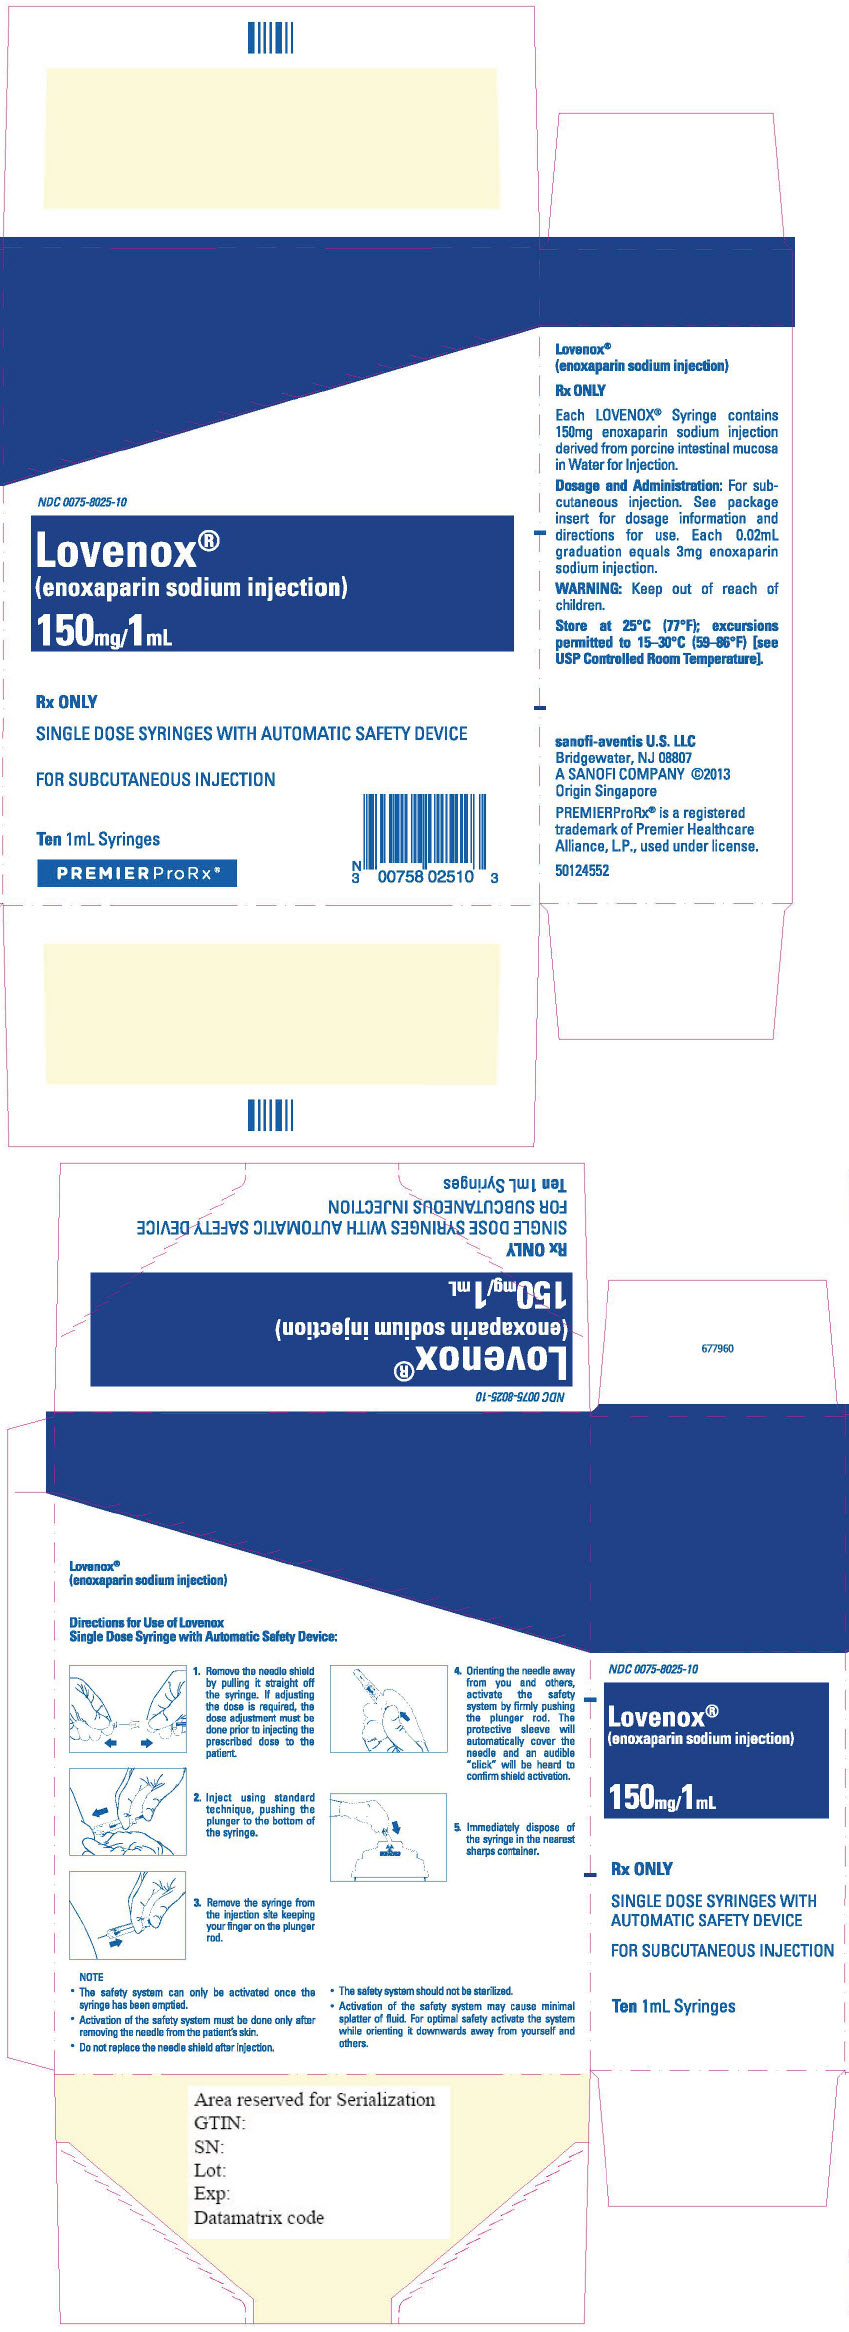 Principal Display Panel - 150 mg/1 mL Syringe Blister Pack Carton